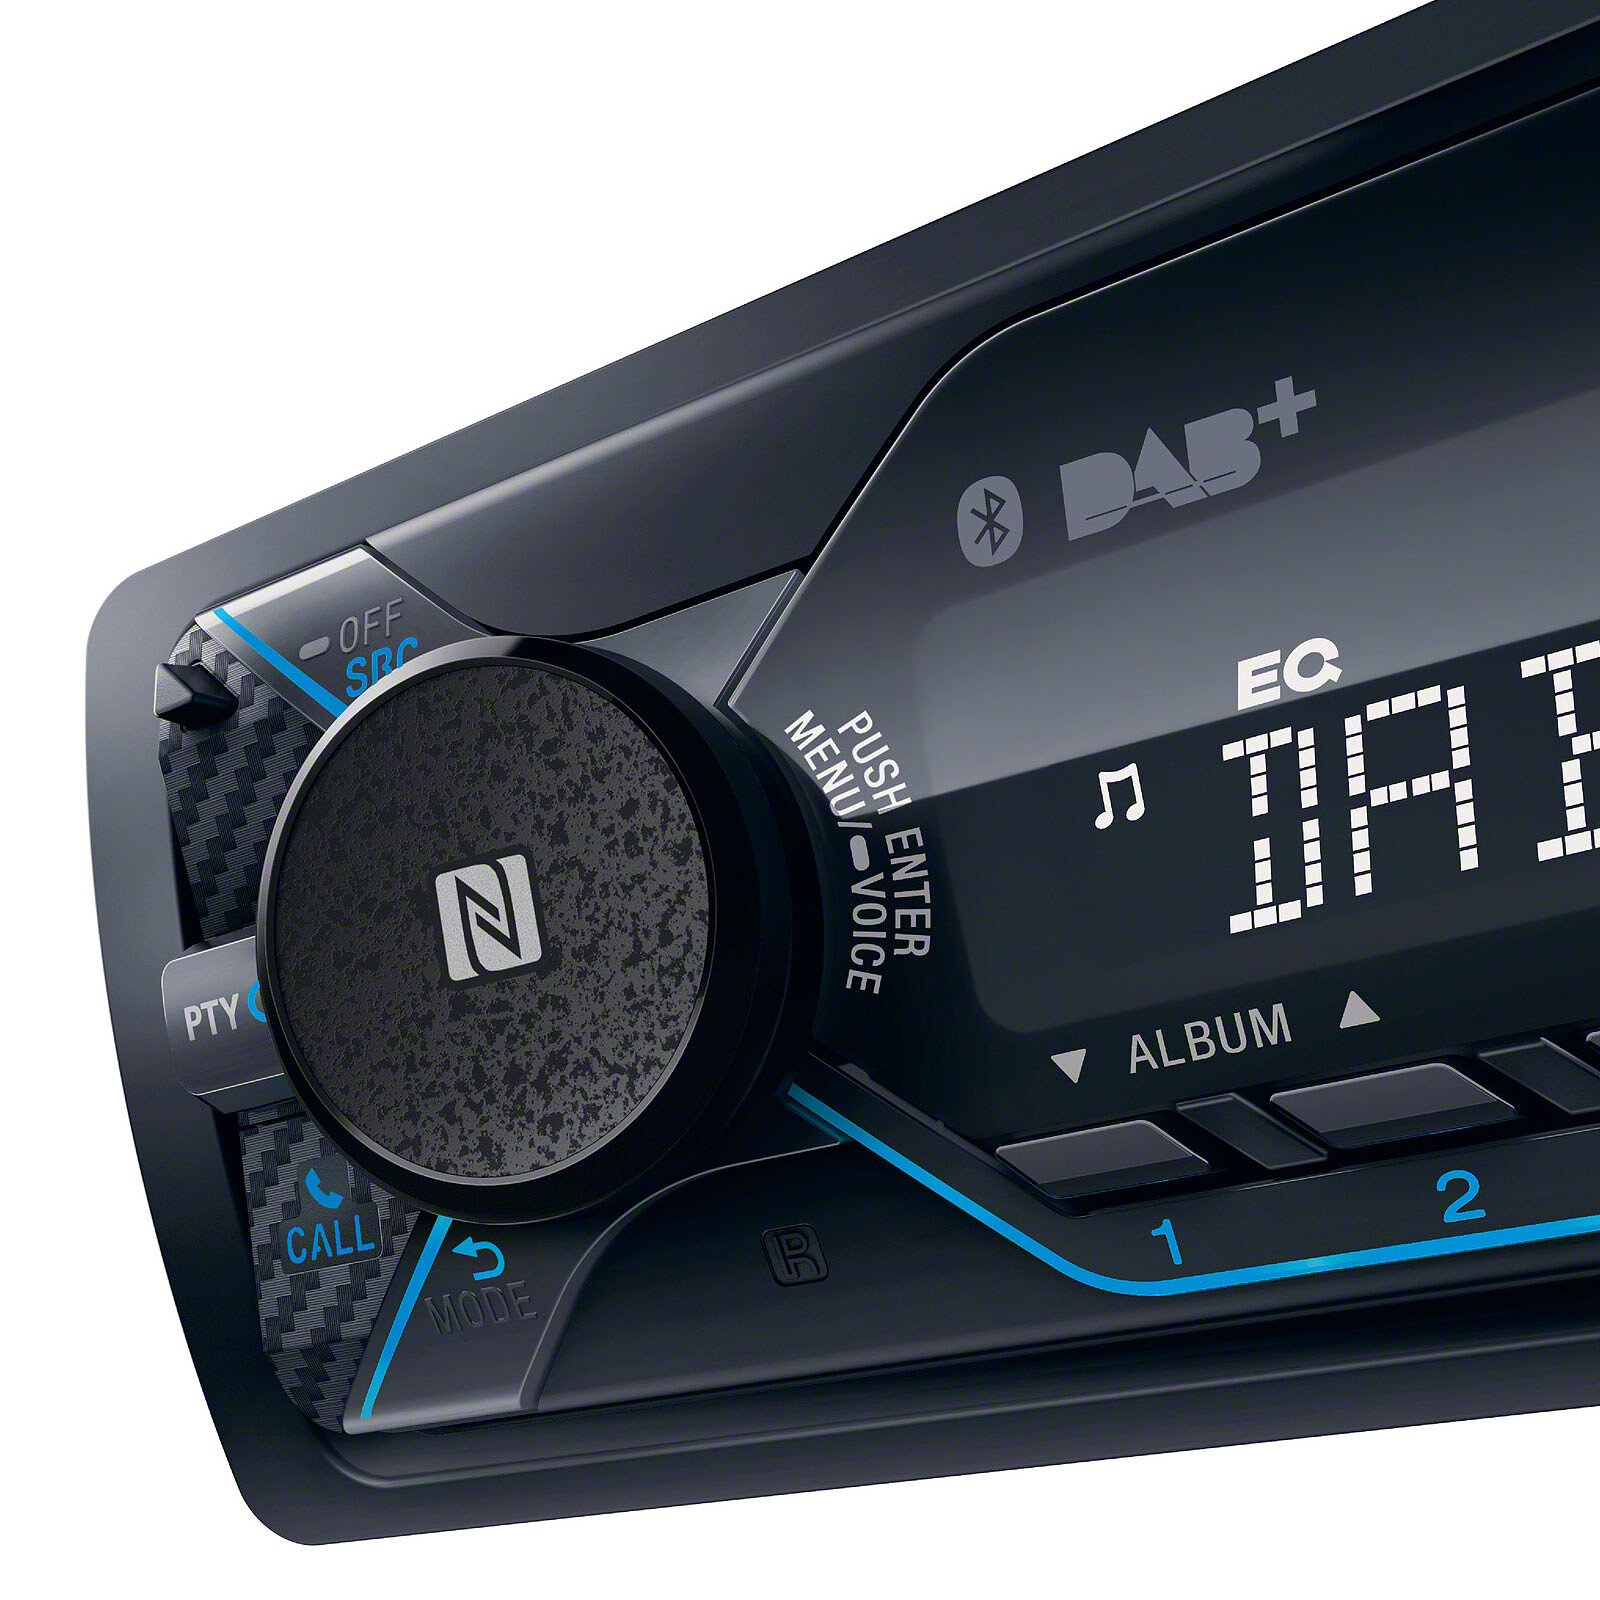 Car Radio Pioneer MVH-330DAB Bluetooth MP3 USB Aux-In Antenna DAB